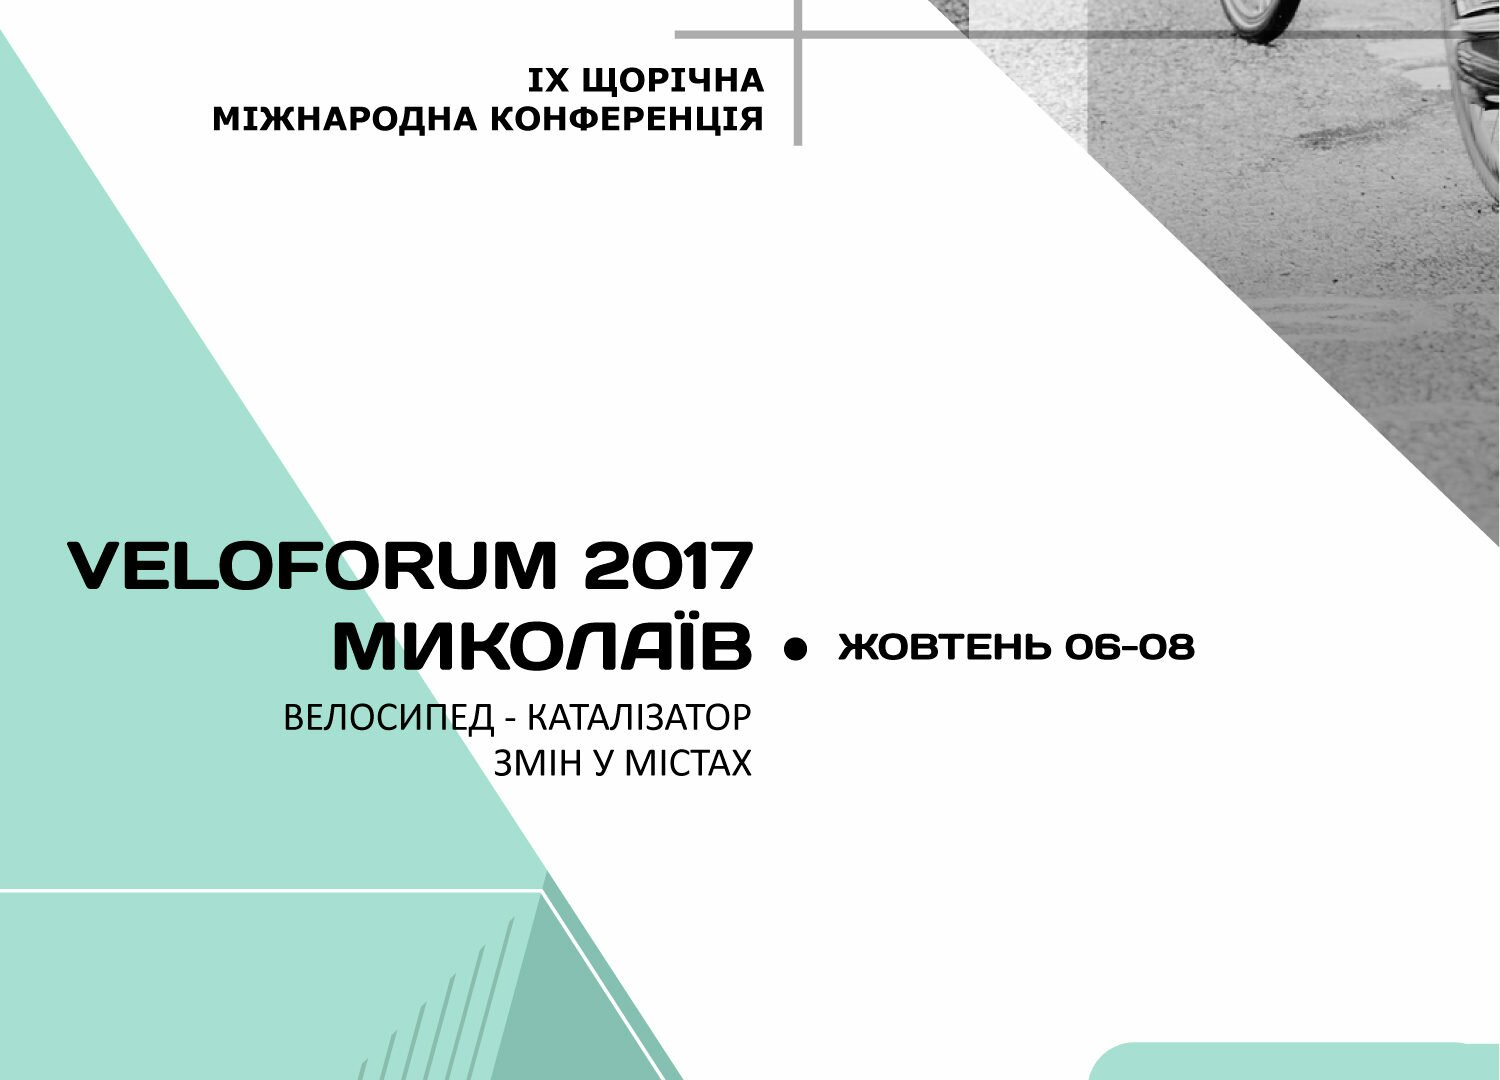 Опублікована програма Велофоруму 2017 Миколаїв